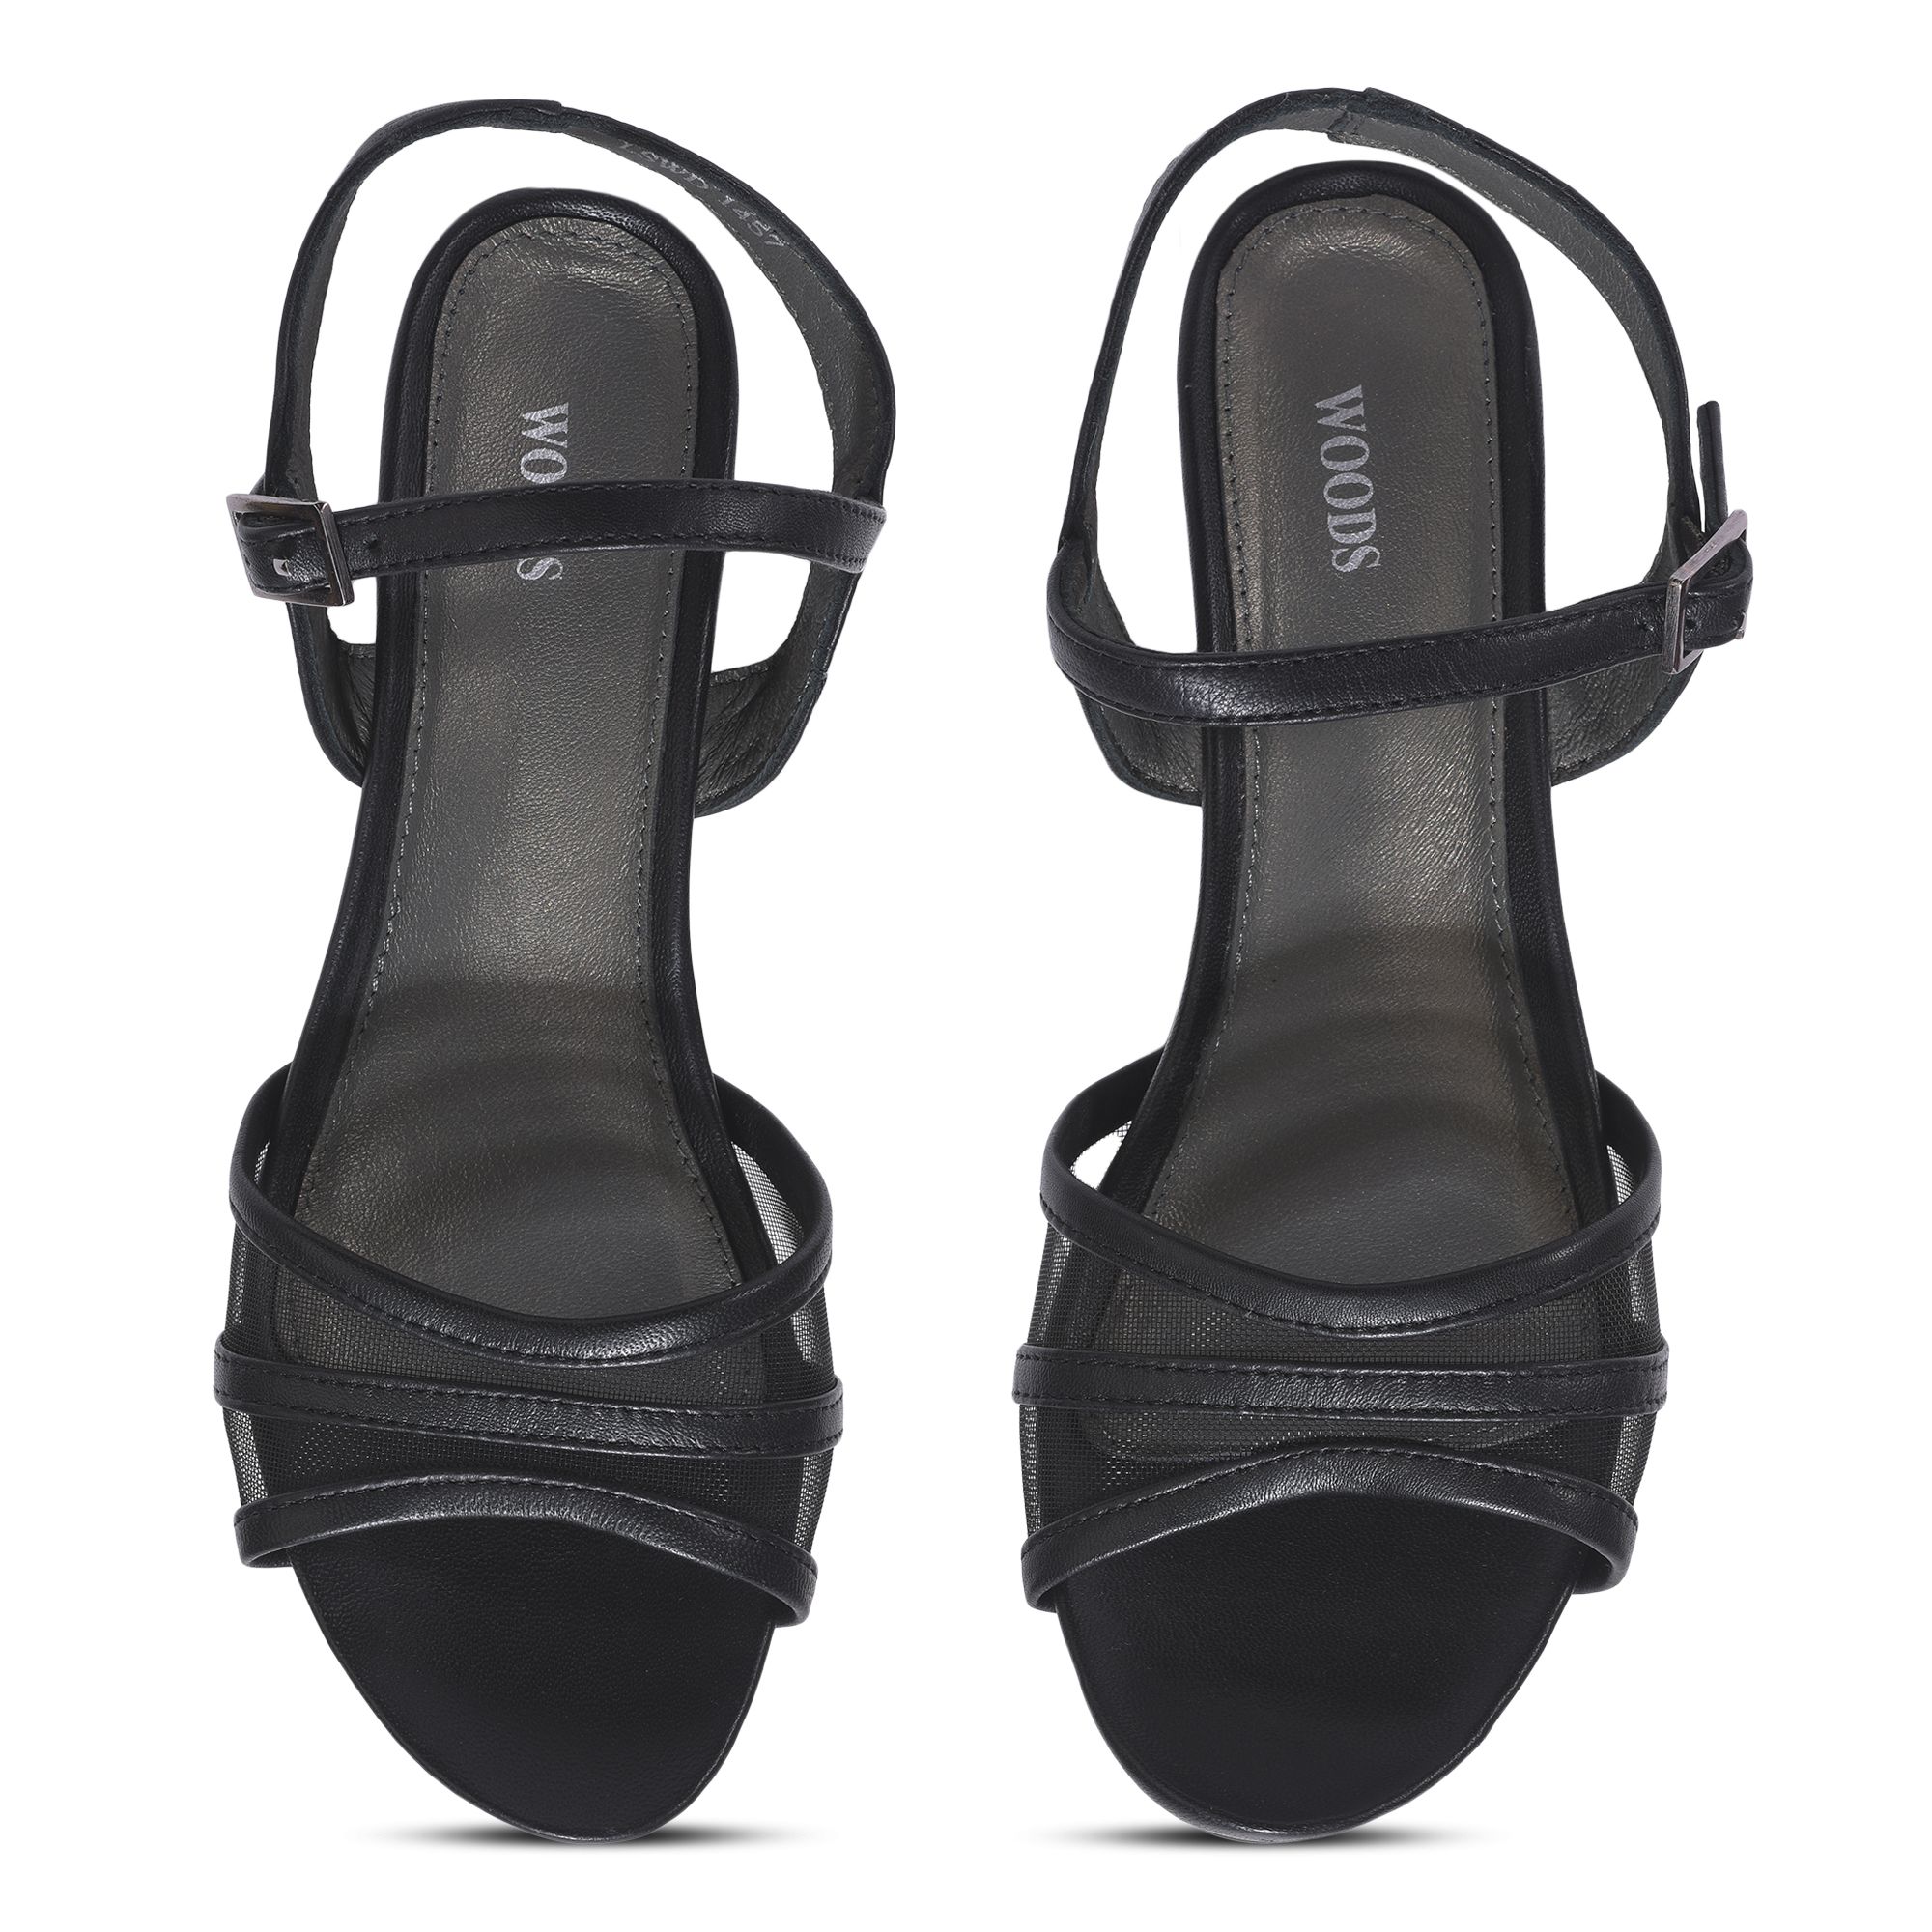 BLACK wedge heel sandals for women